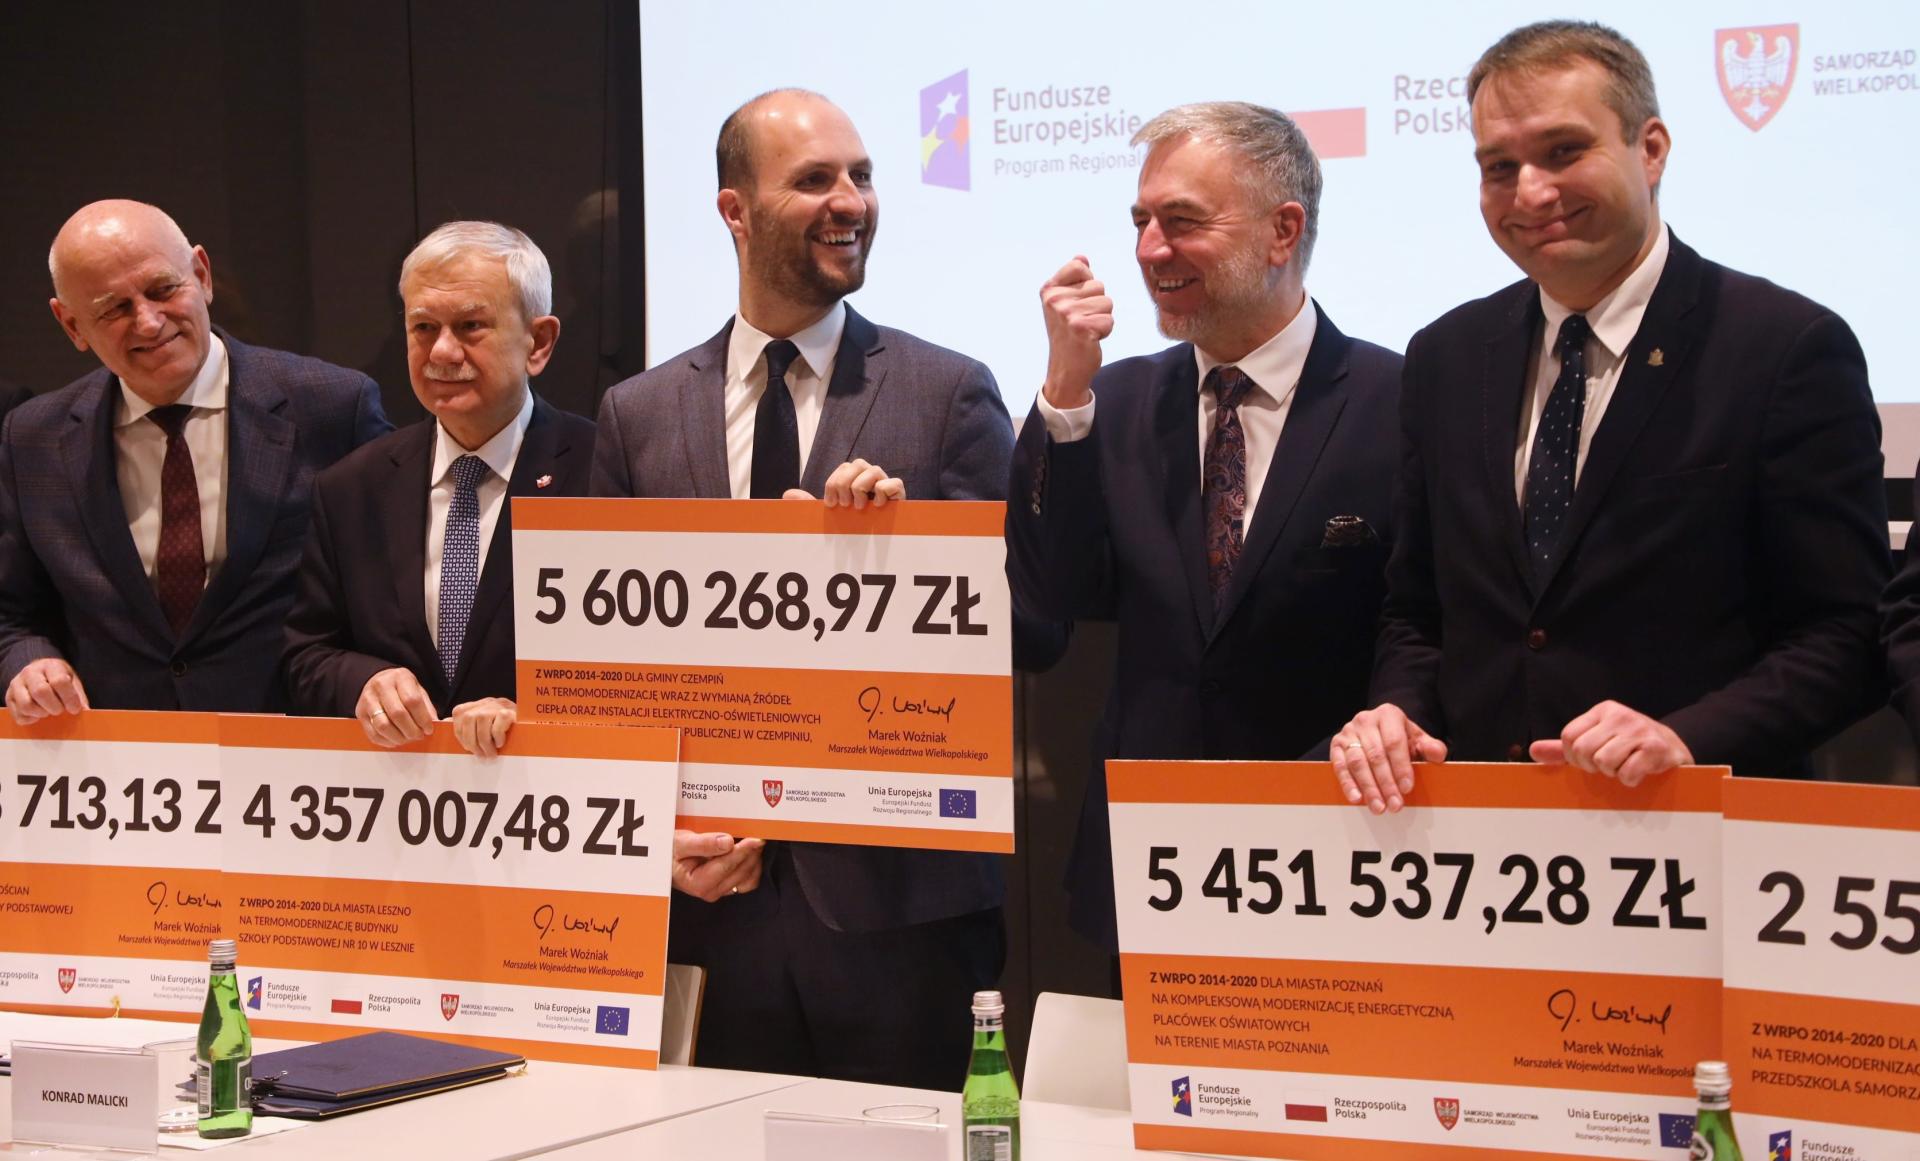 29 milionów złotych z WRPO 2014+ na modernizację energetyczną w Wielkopolsce  - zobacz więcej